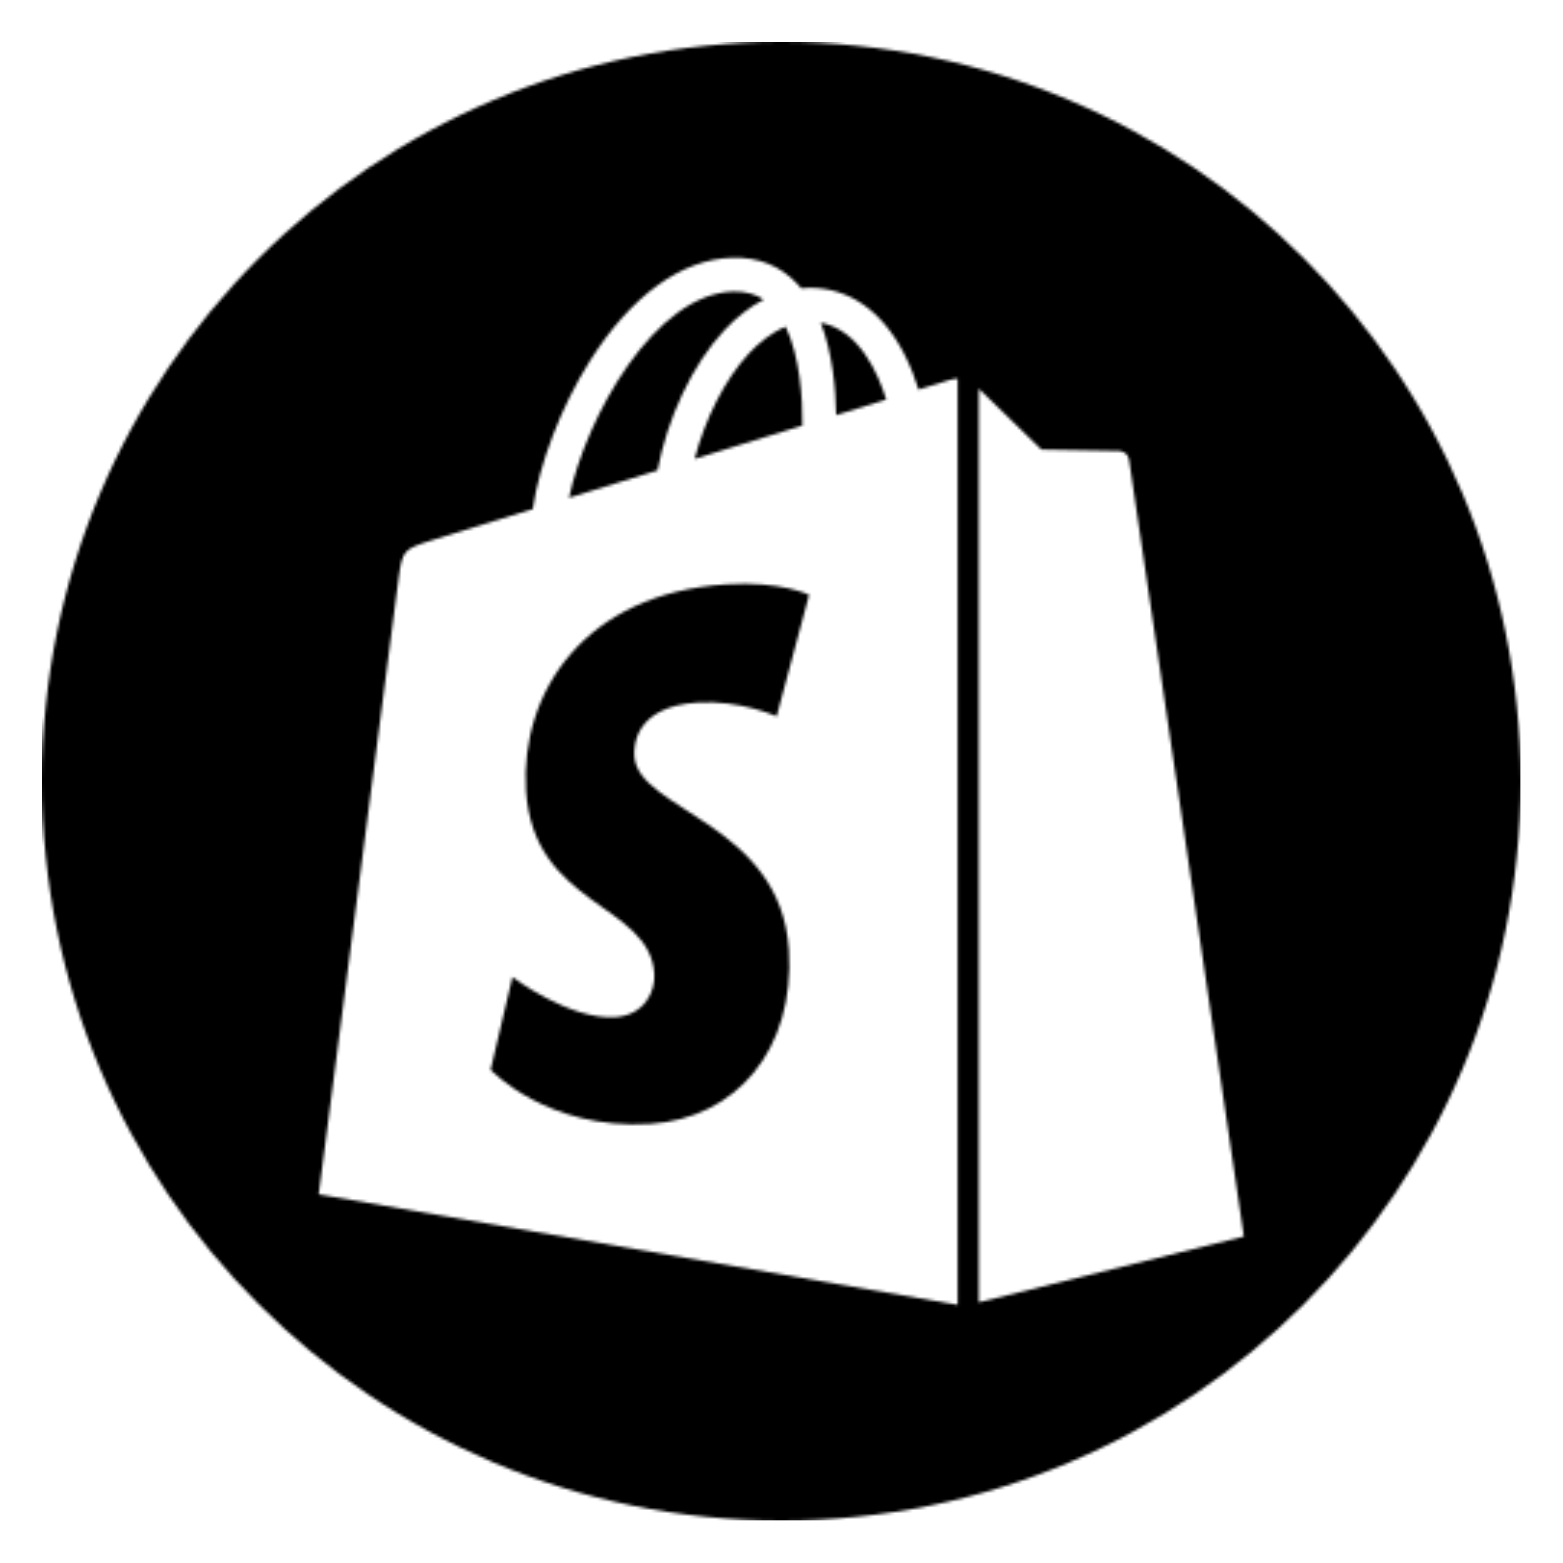 Onlineshop Erstellung mit Shopify - Dem Marktführer der E-Commerce Plattformen